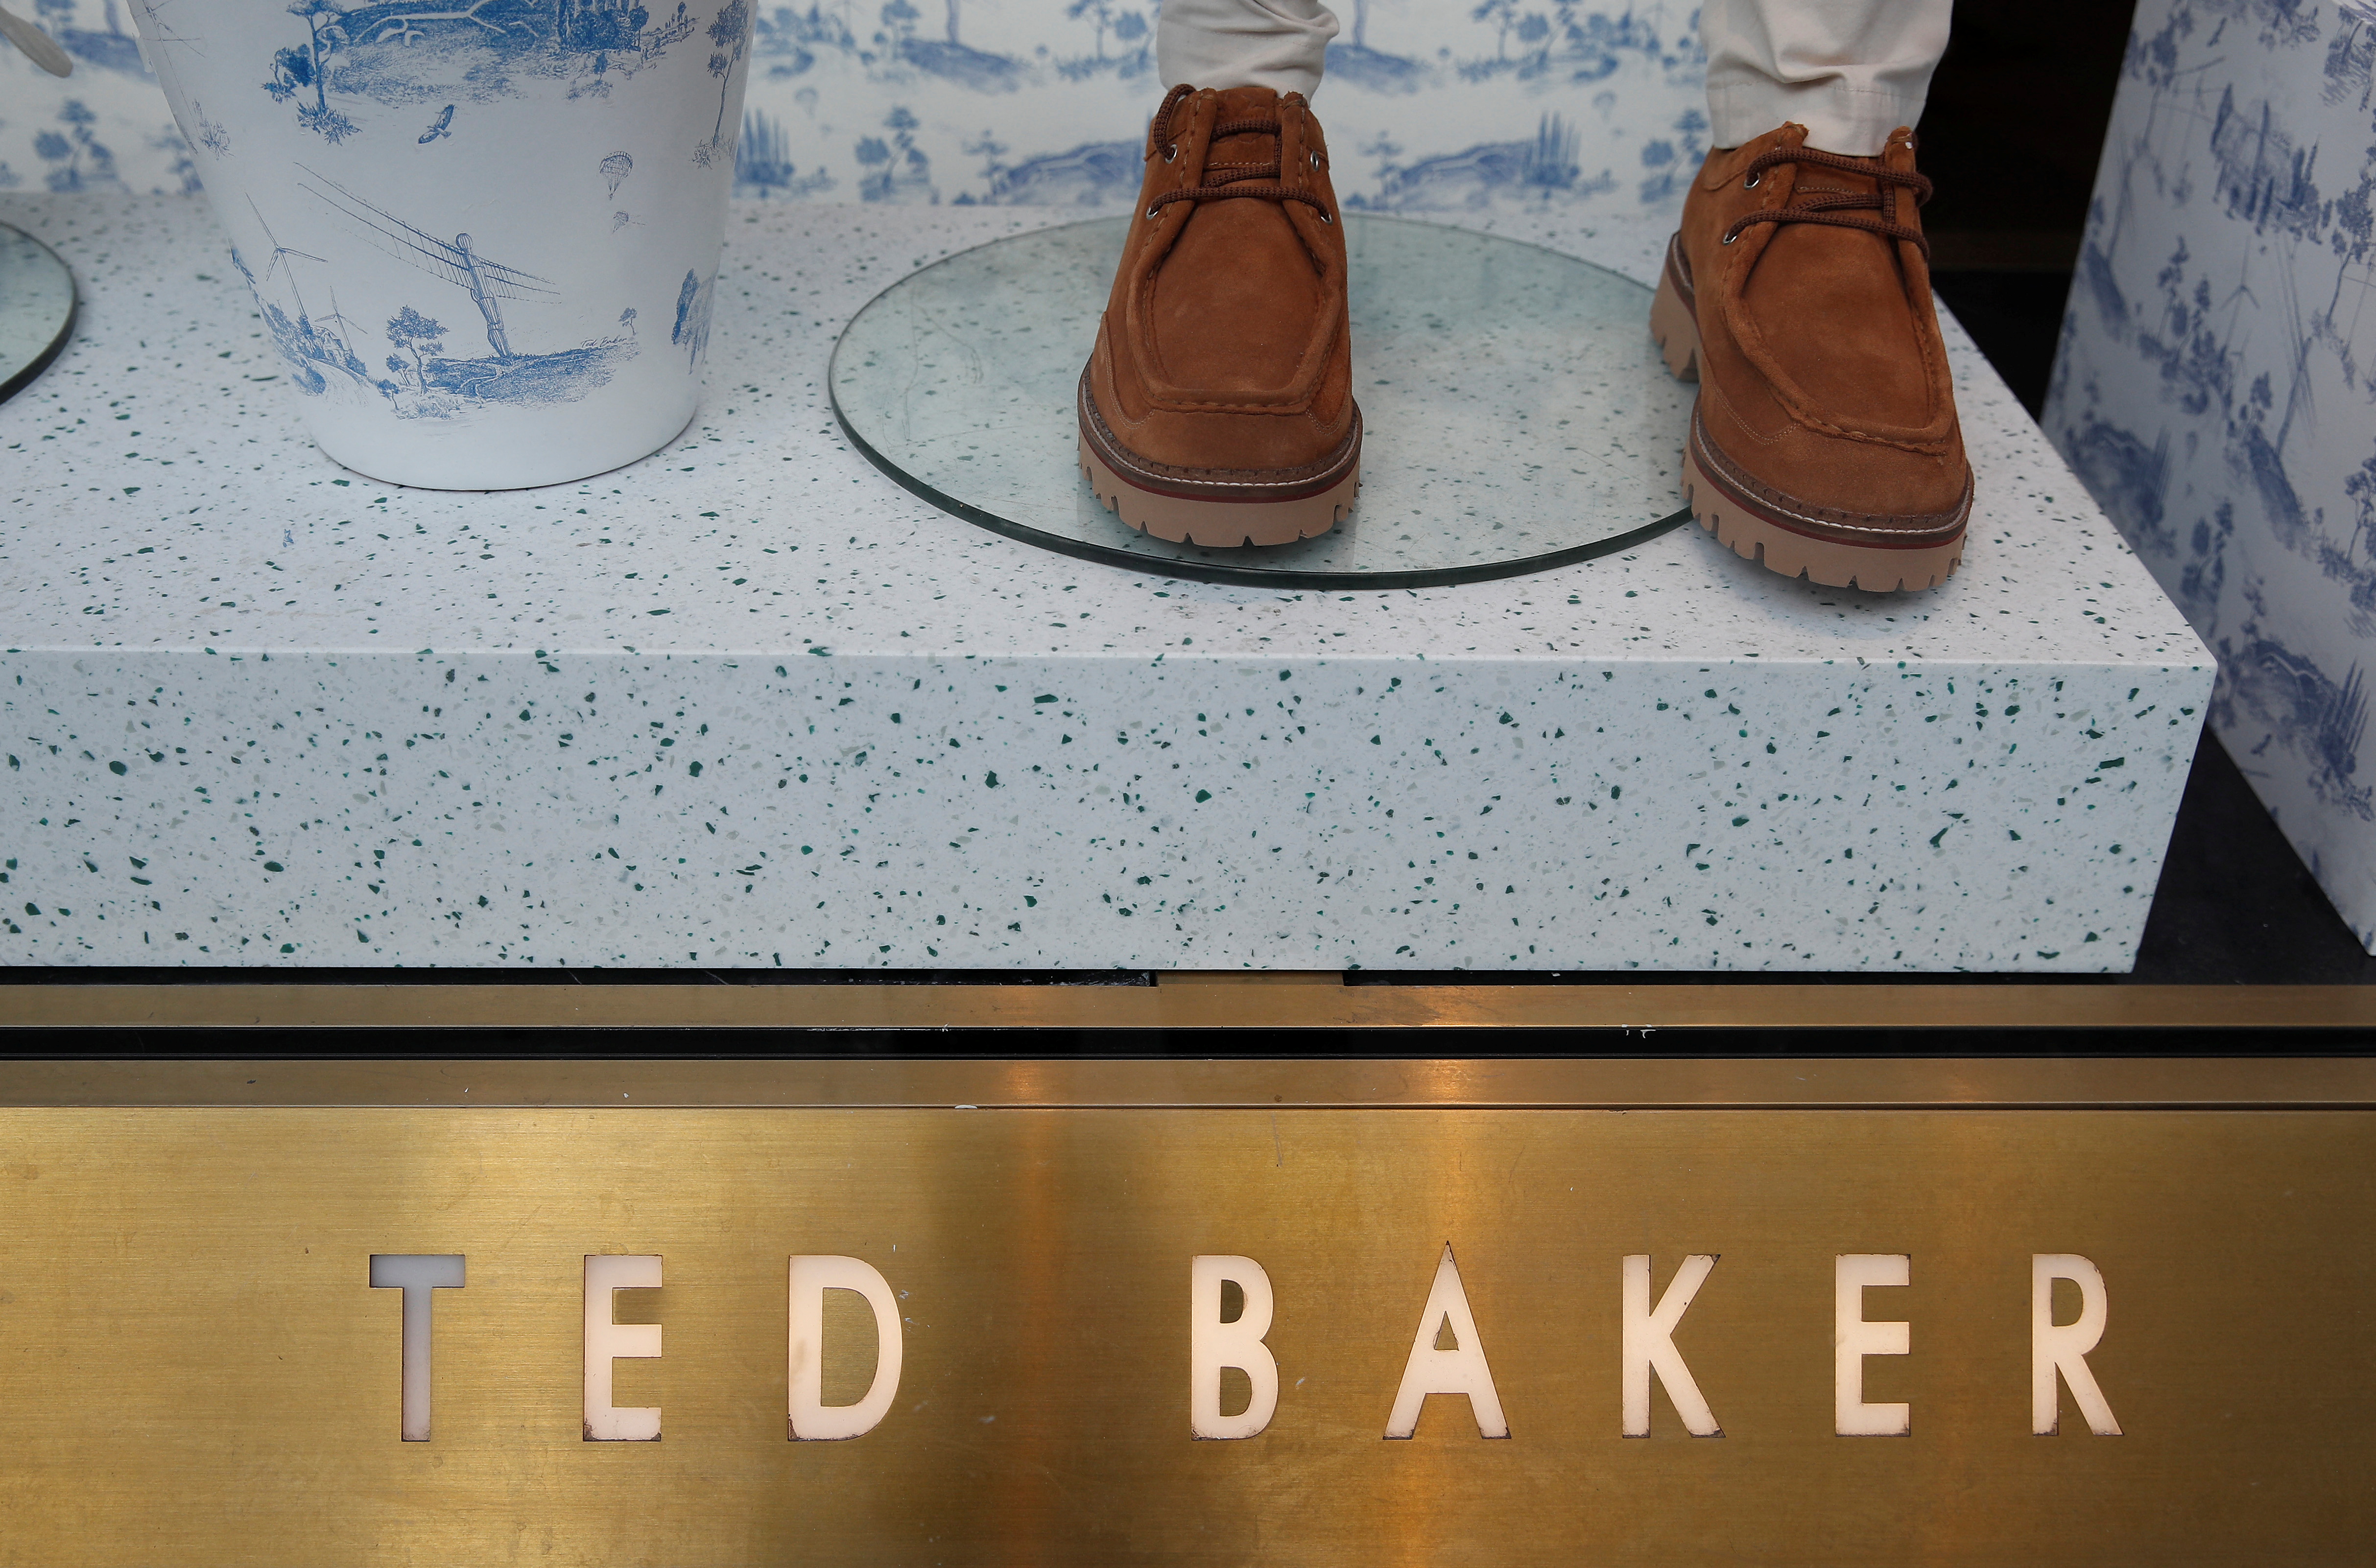 A Ted Baker store is seen on Regent Street, in London